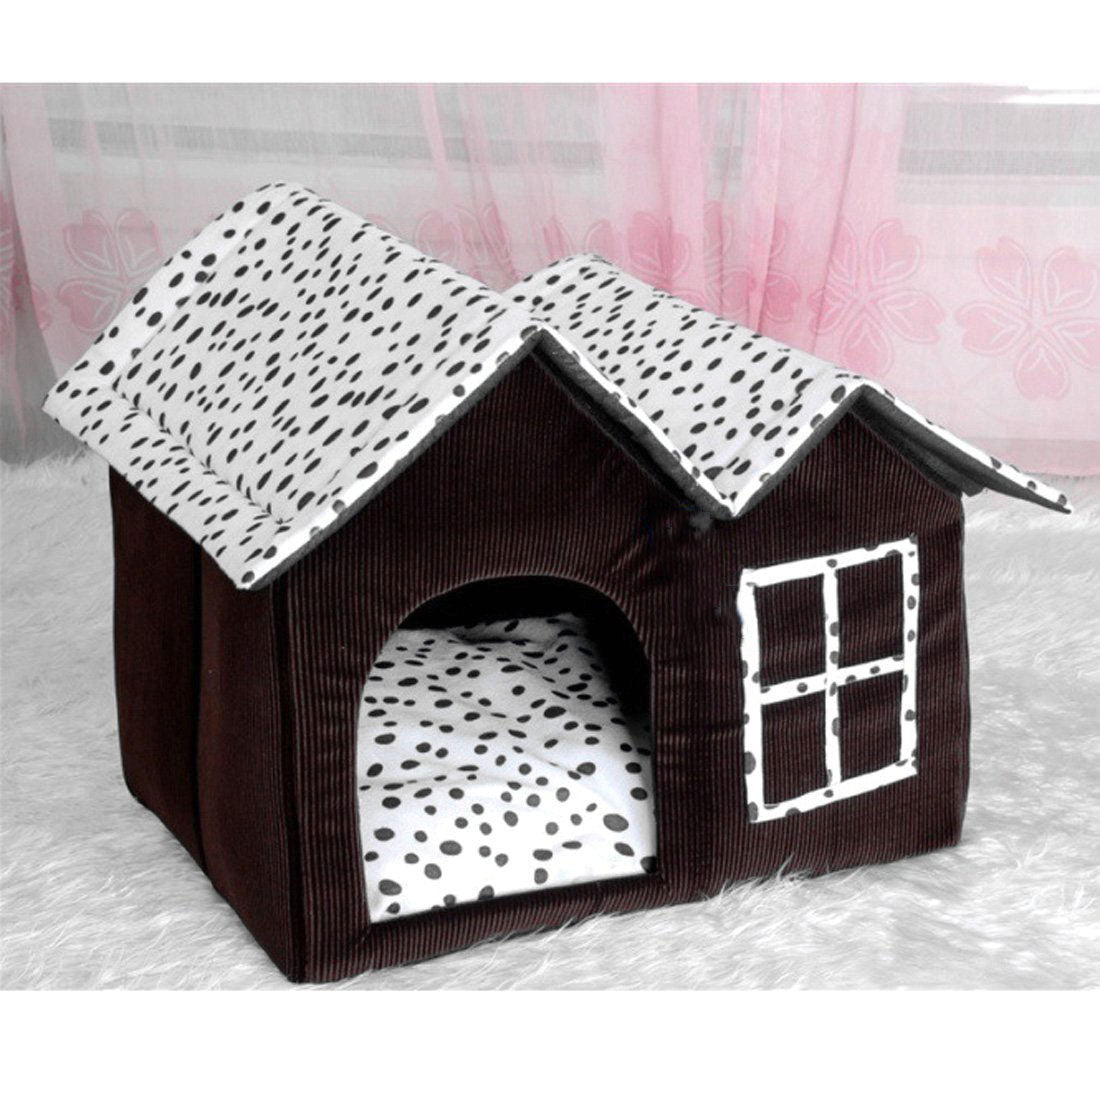 Foldable Warm Dog House